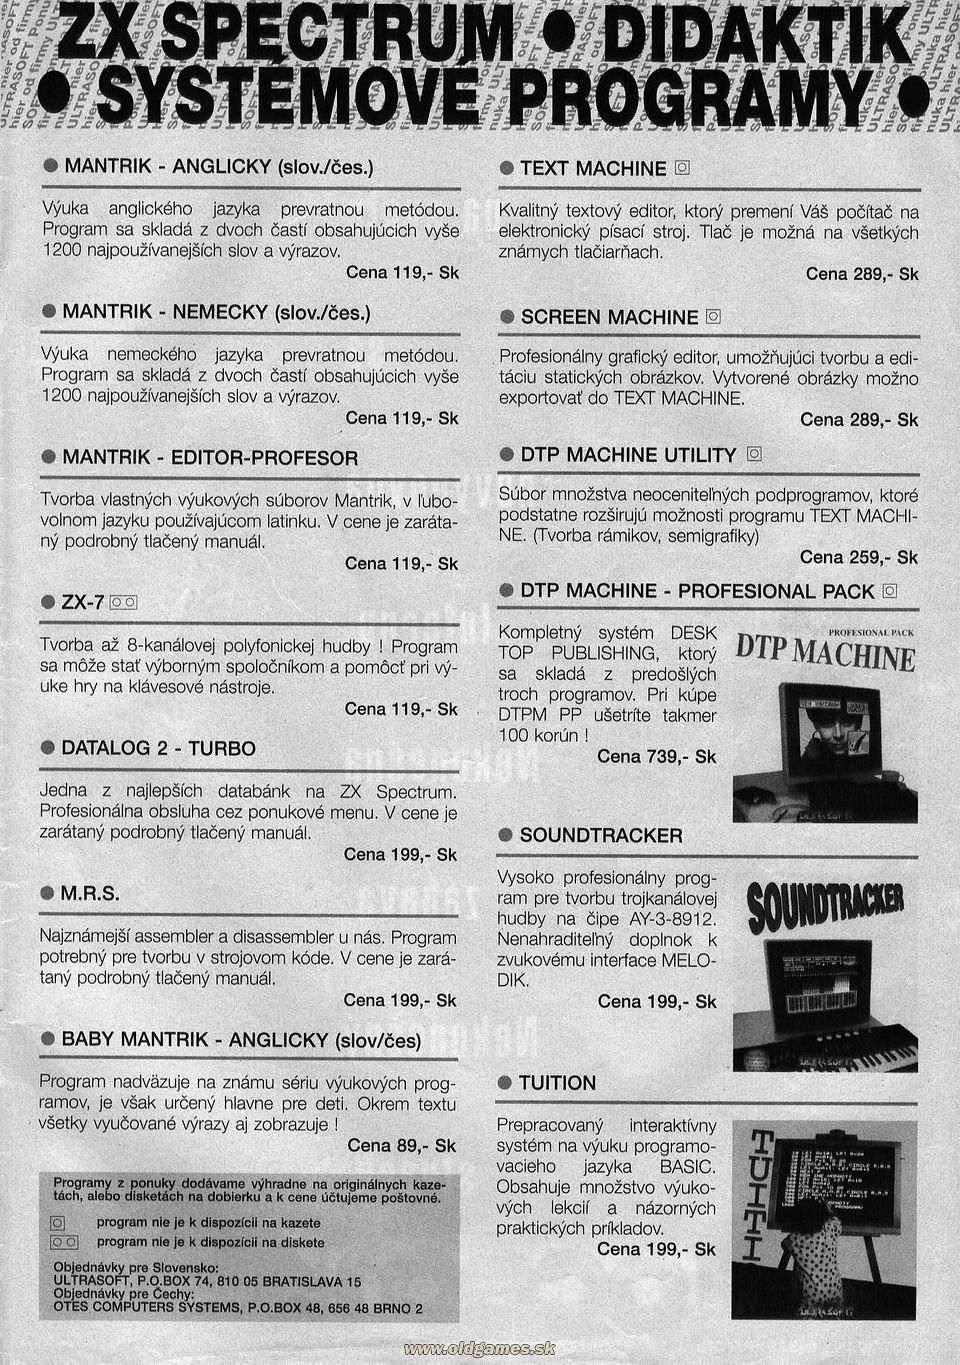 Ultrasoft: Systémové programy pre ZX Spectrum - Didaktik